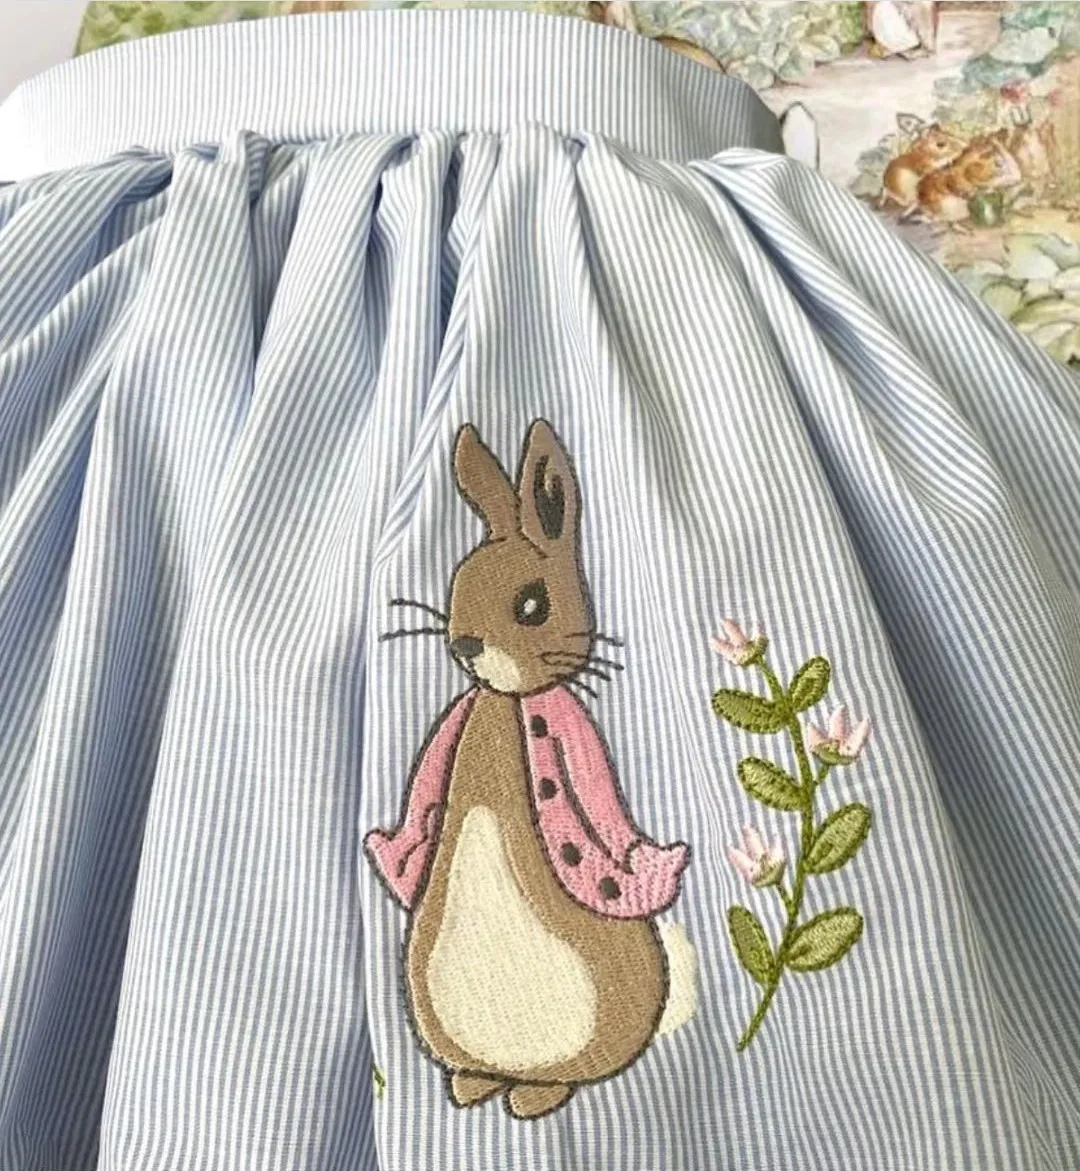 Летнее платье принцессы Лолиты с вышивкой кролика для маленьких девочек 0-12 лет, турецкое винтажное бальное платье принцессы Лолиты на день рождения, Рождество Ид Изображение 1